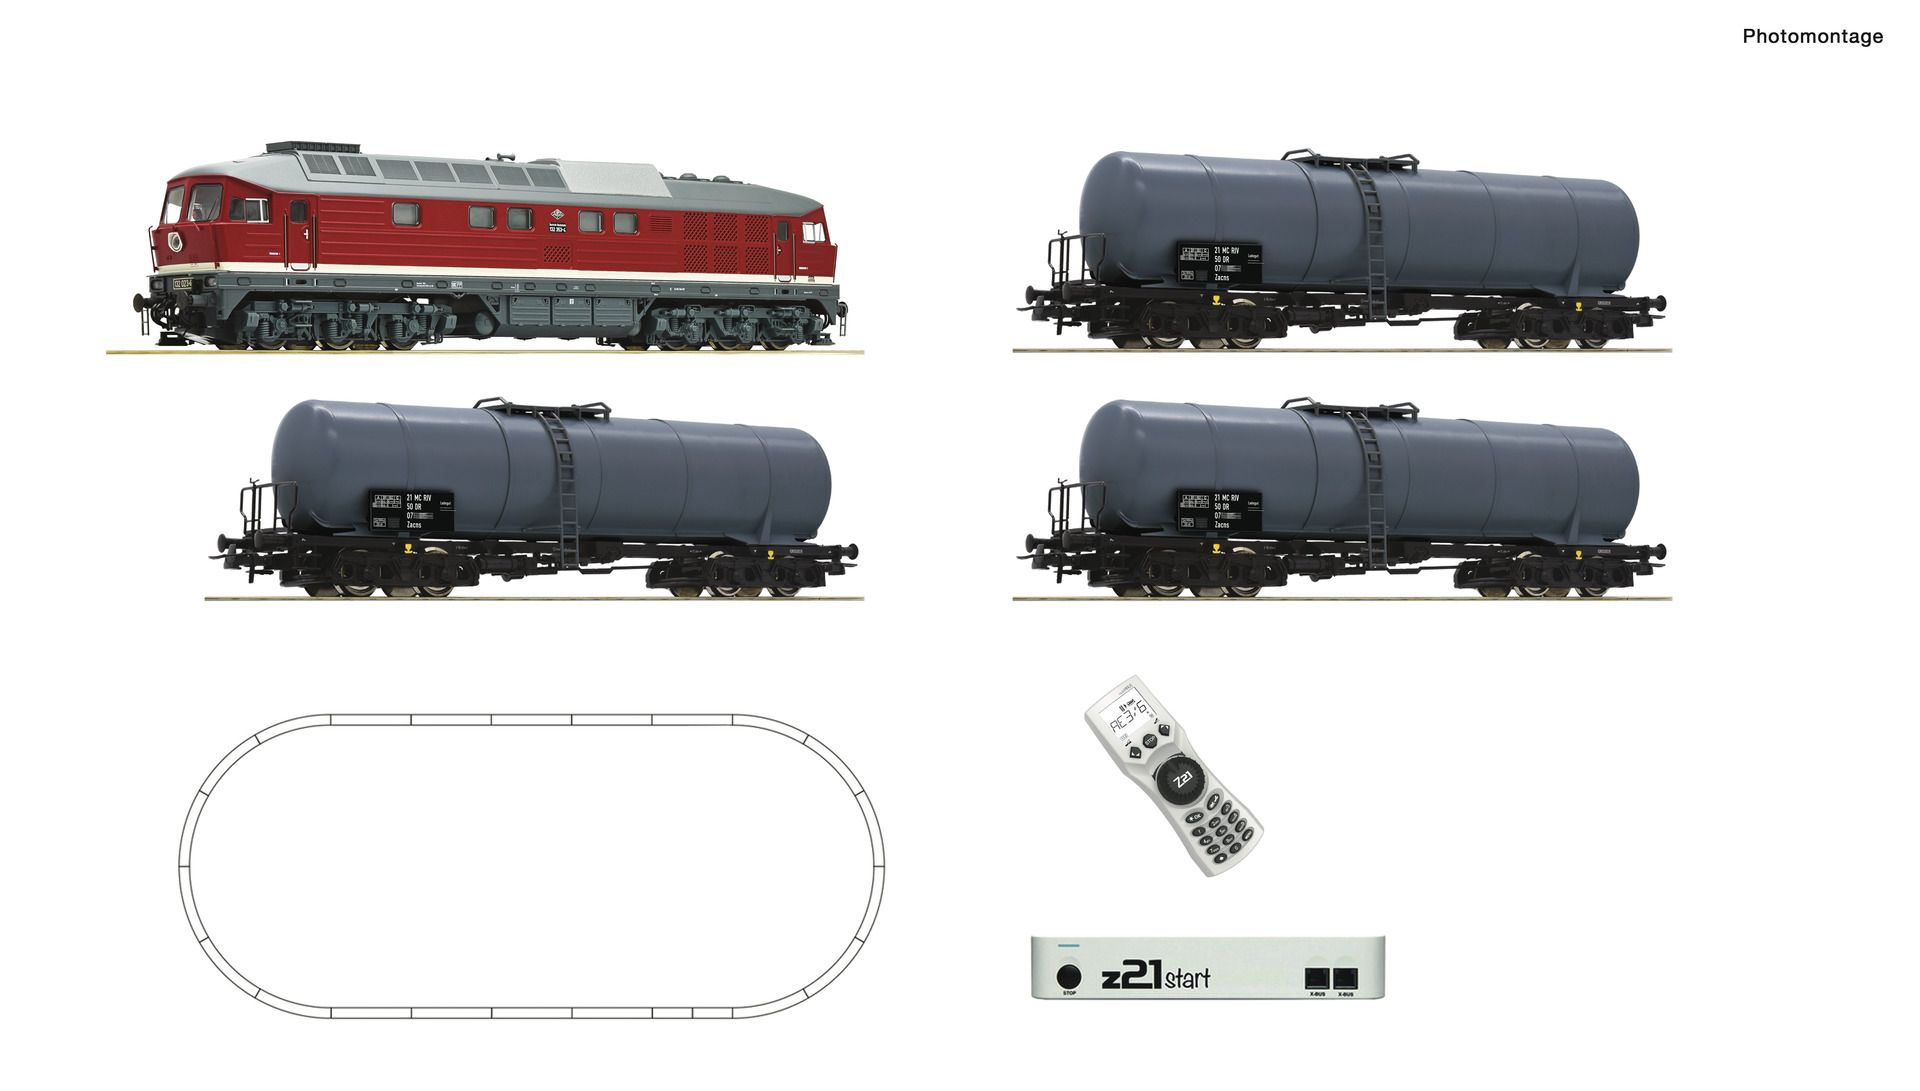 Roco 5110002 - Digitales Startset mit BR 132 und Güterzug, DR, Ep.IV, z21start